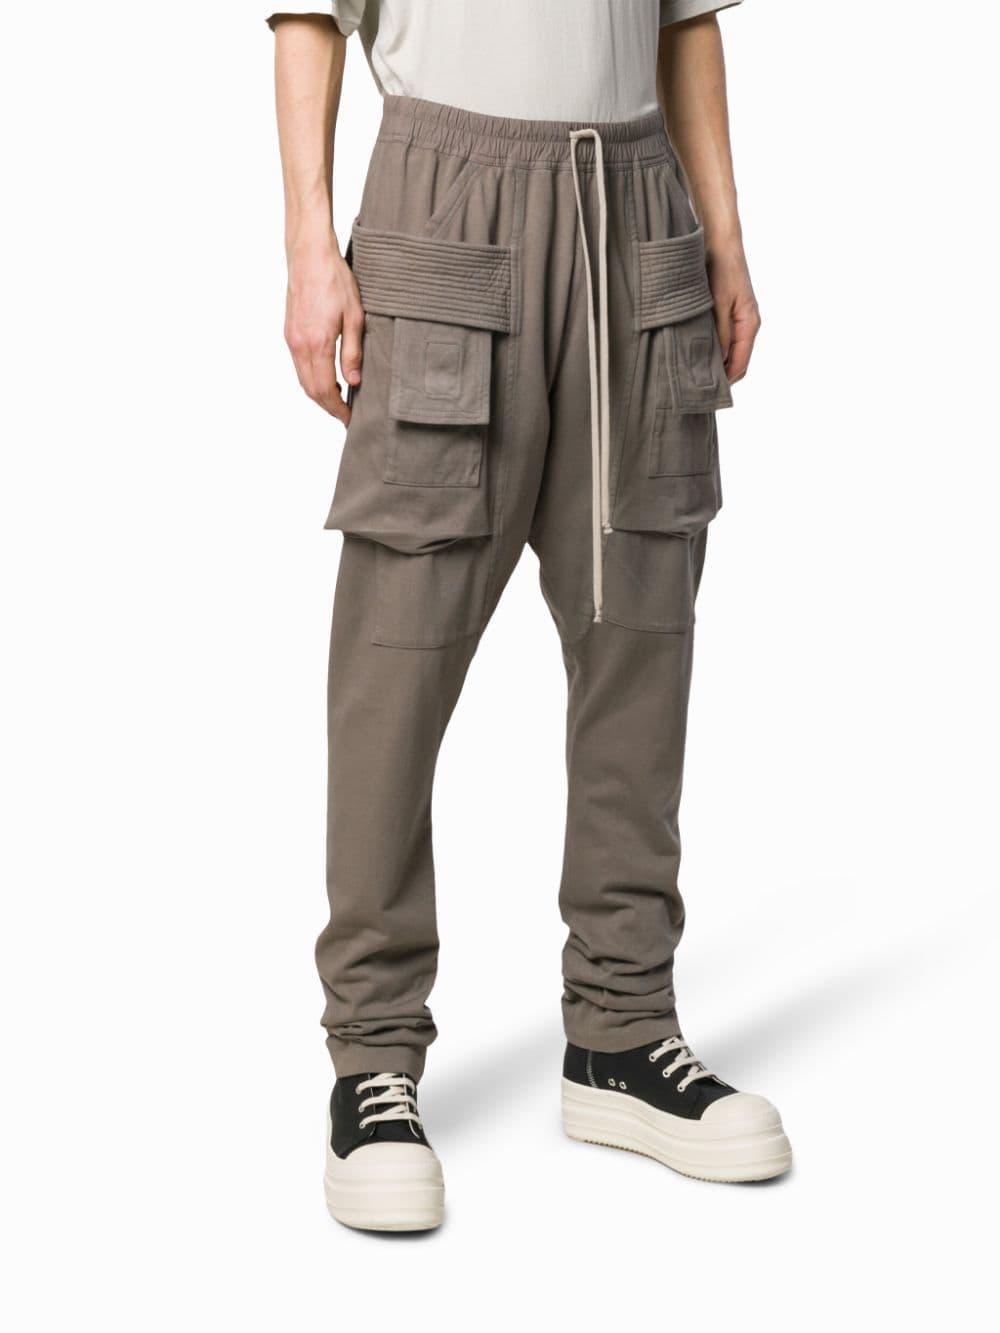 Rick Owens Drkshdw Cotton Creatch Cargo Pants for Men - Lyst